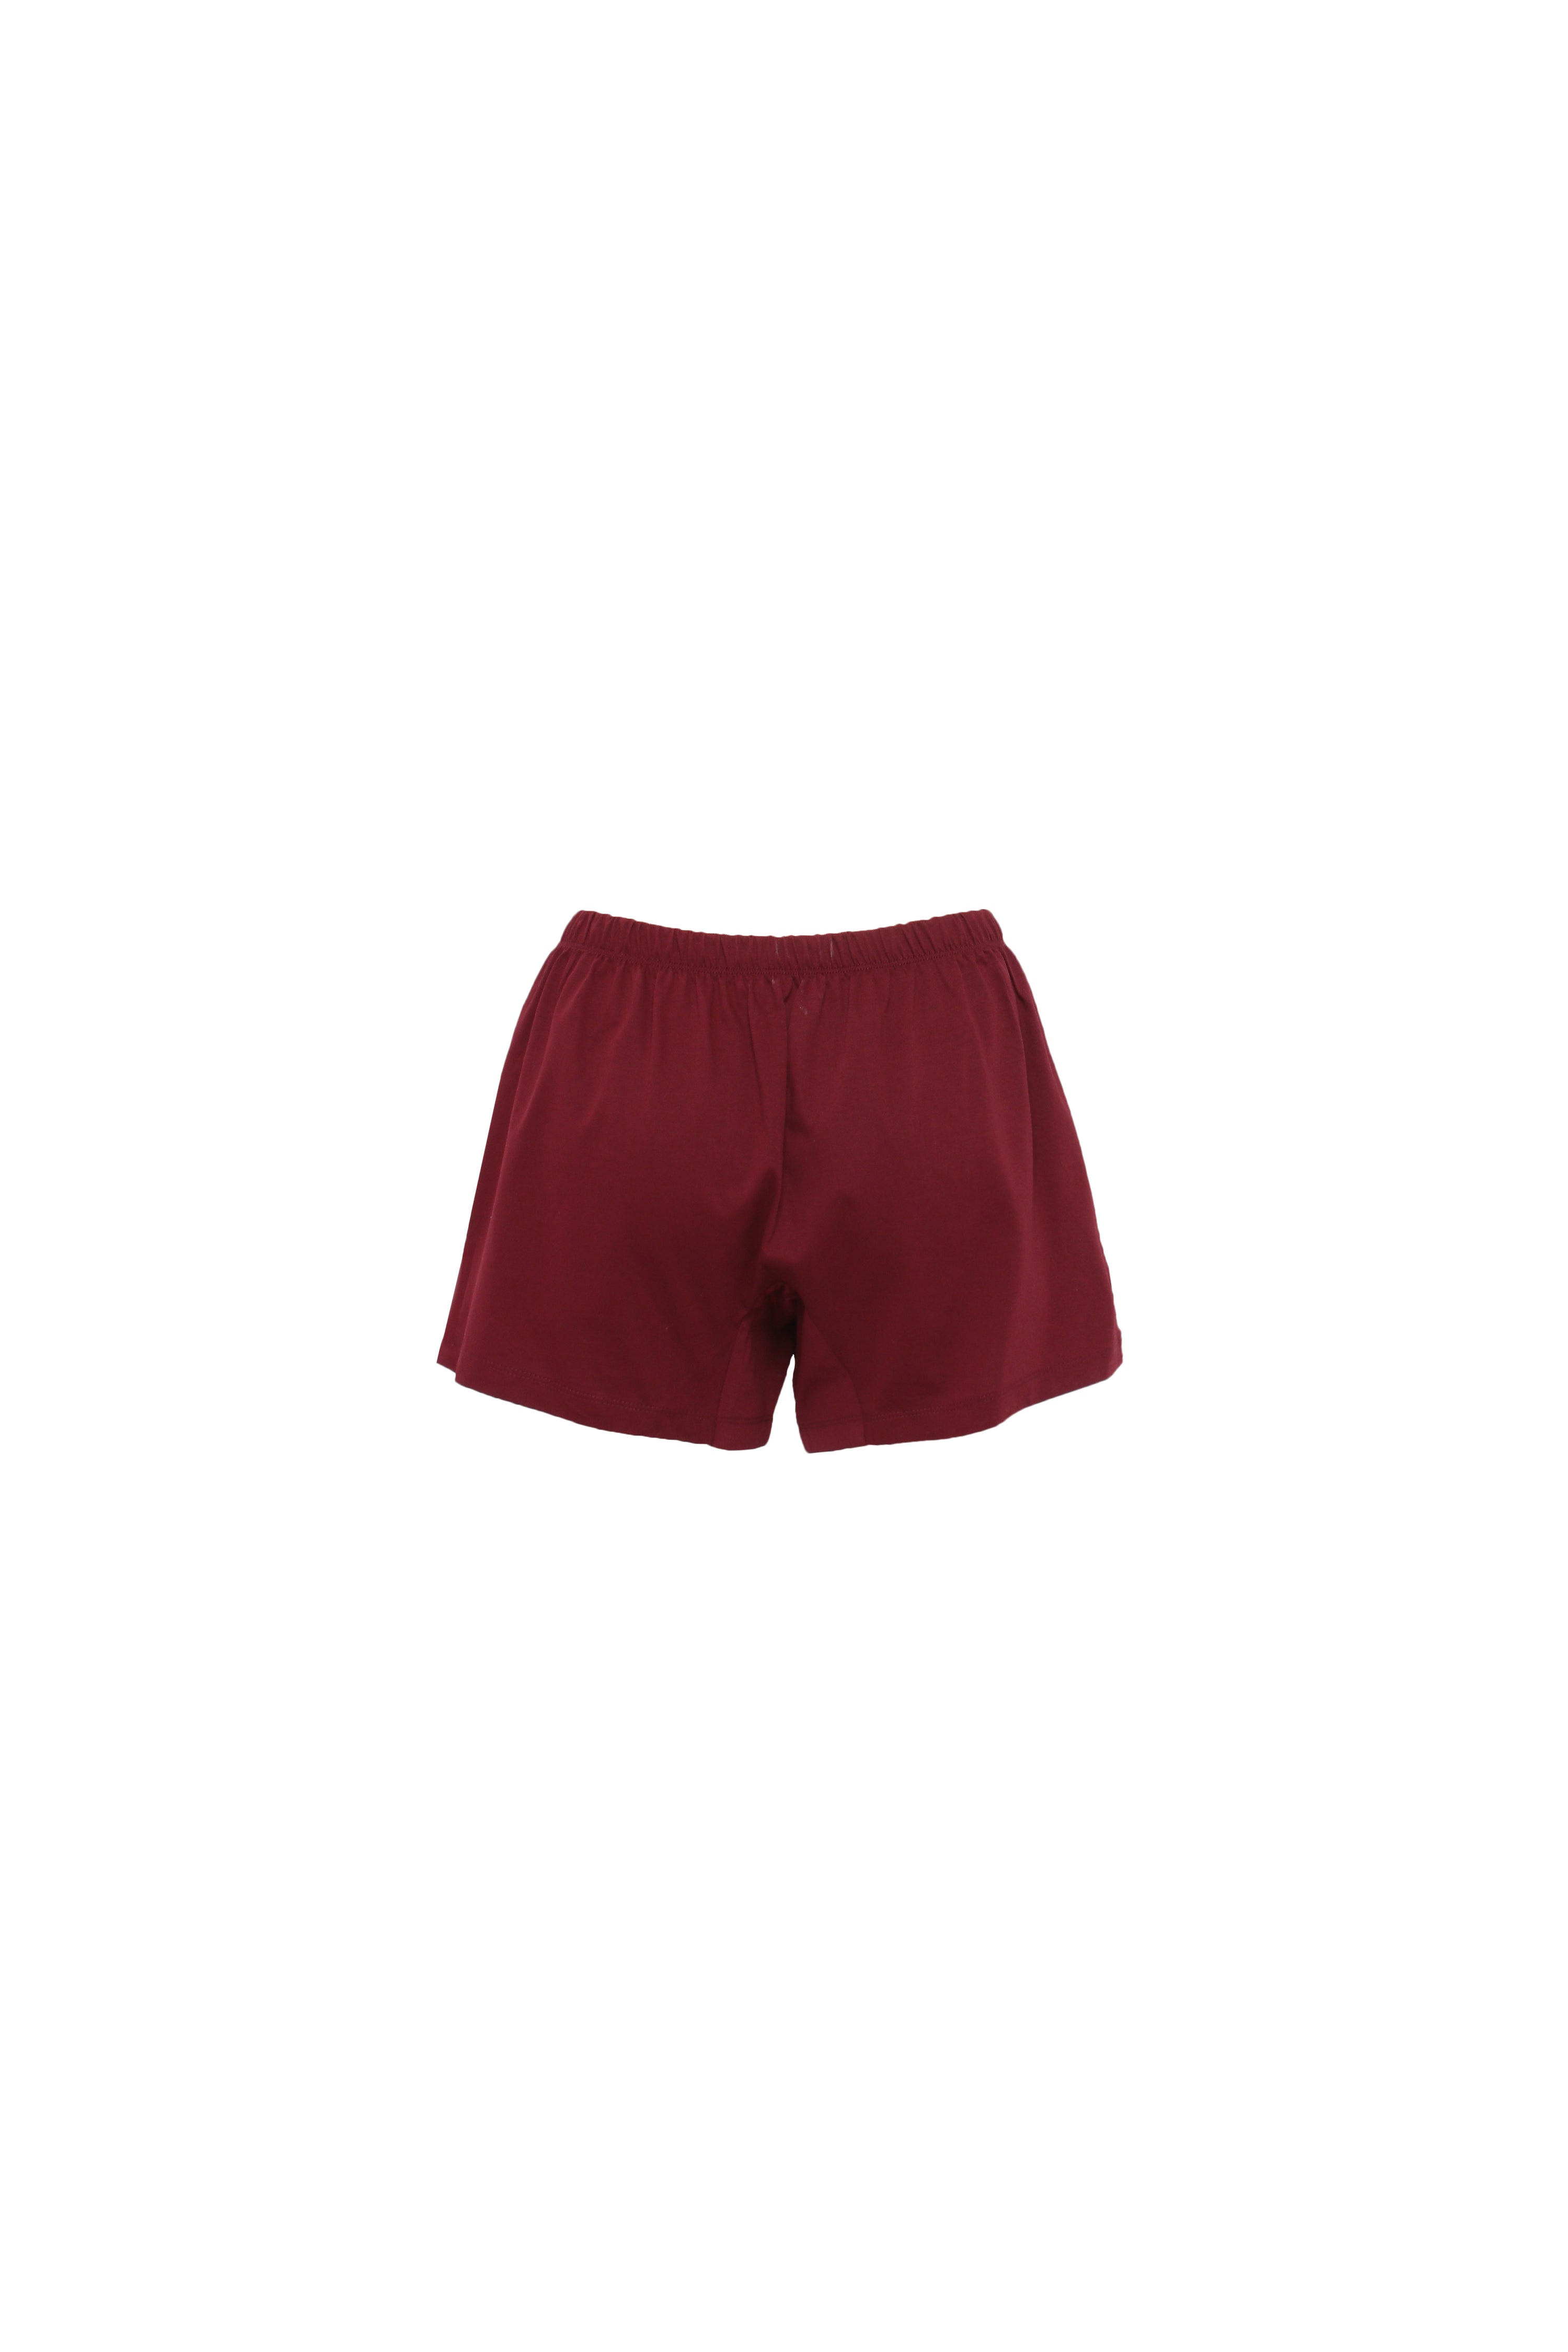 Unisex Under Shorts